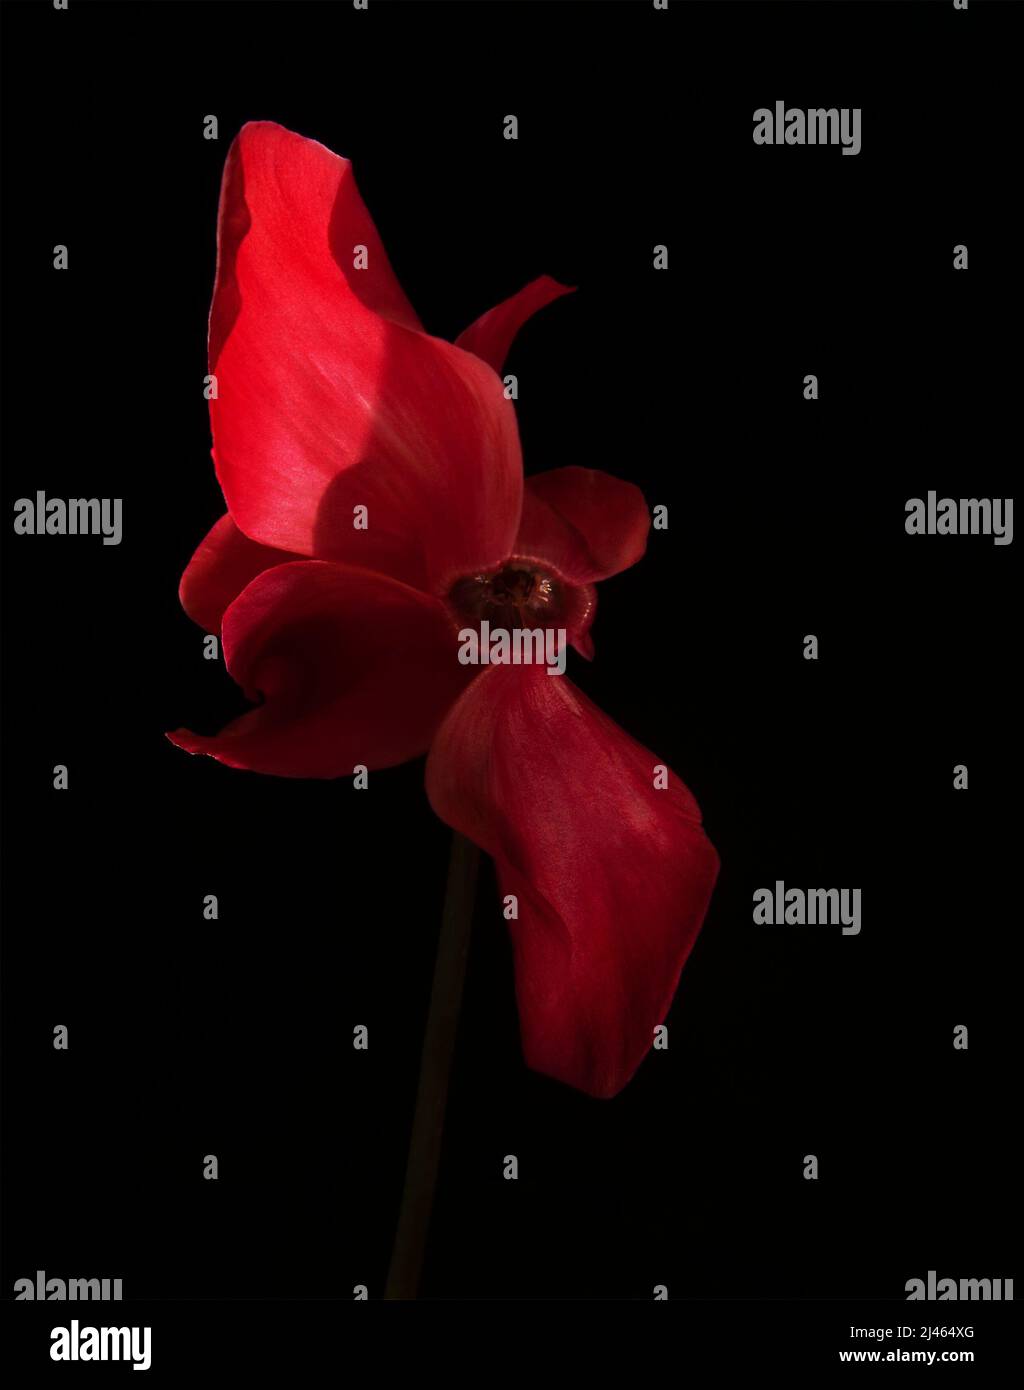 Bel fiore di ciclamino su sfondo nero. Fiore rosso appassionato su un gambo lungo e sottile. Grandi petali rossi curvi. Foto Stock